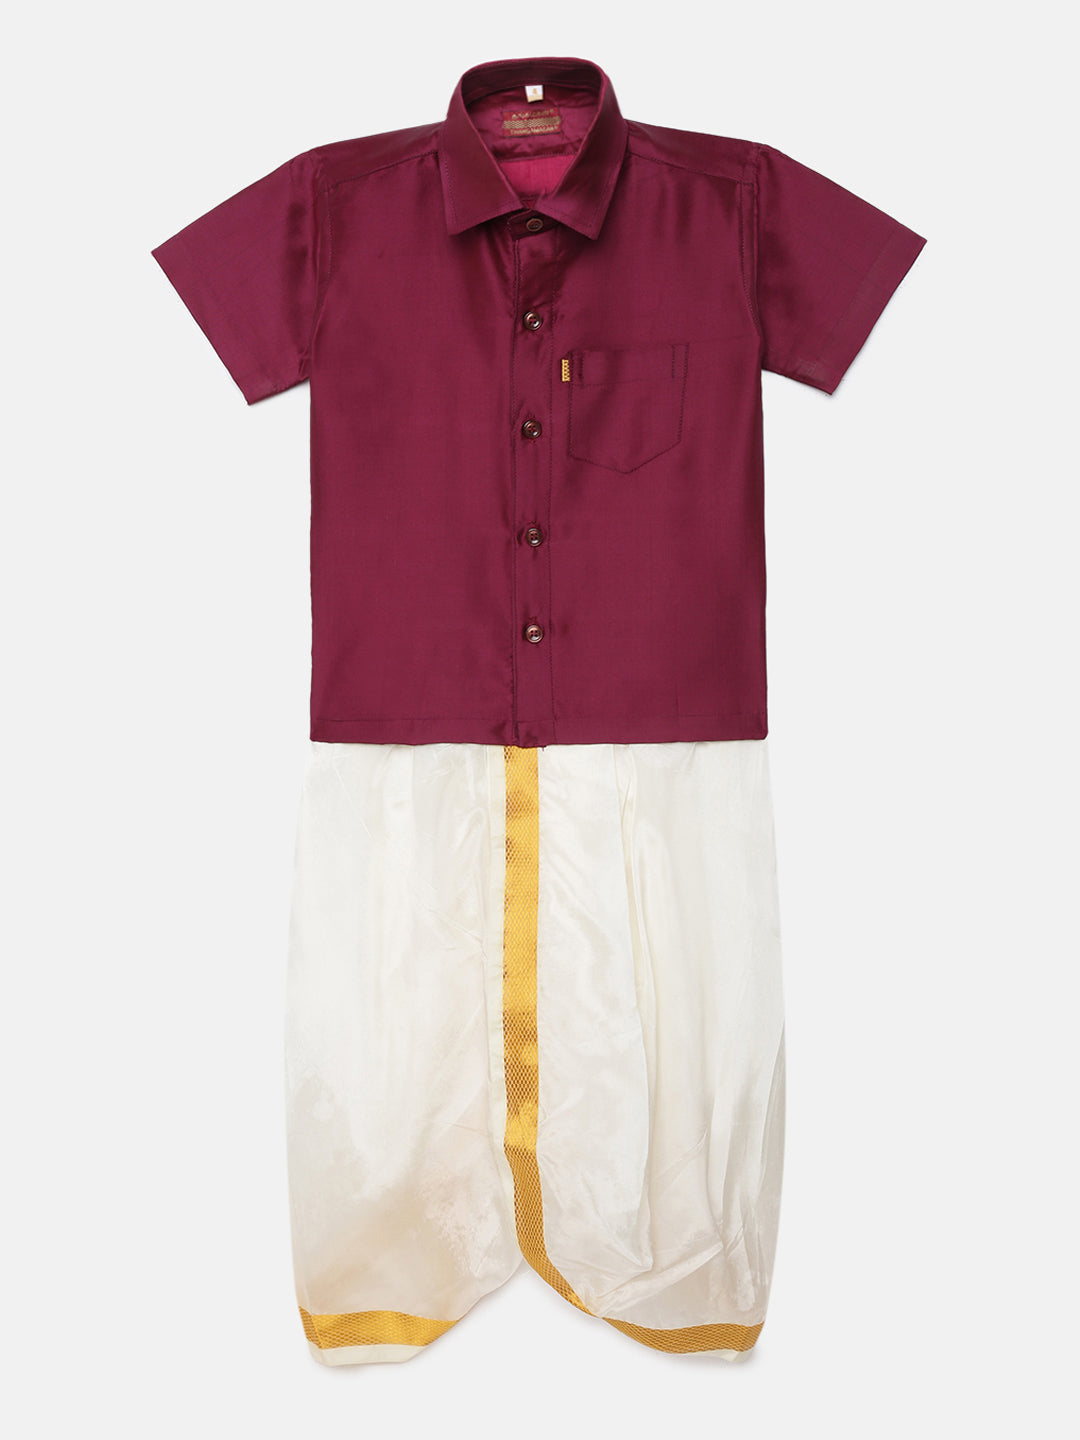 9. Boys Panjagajam & Shirt Set